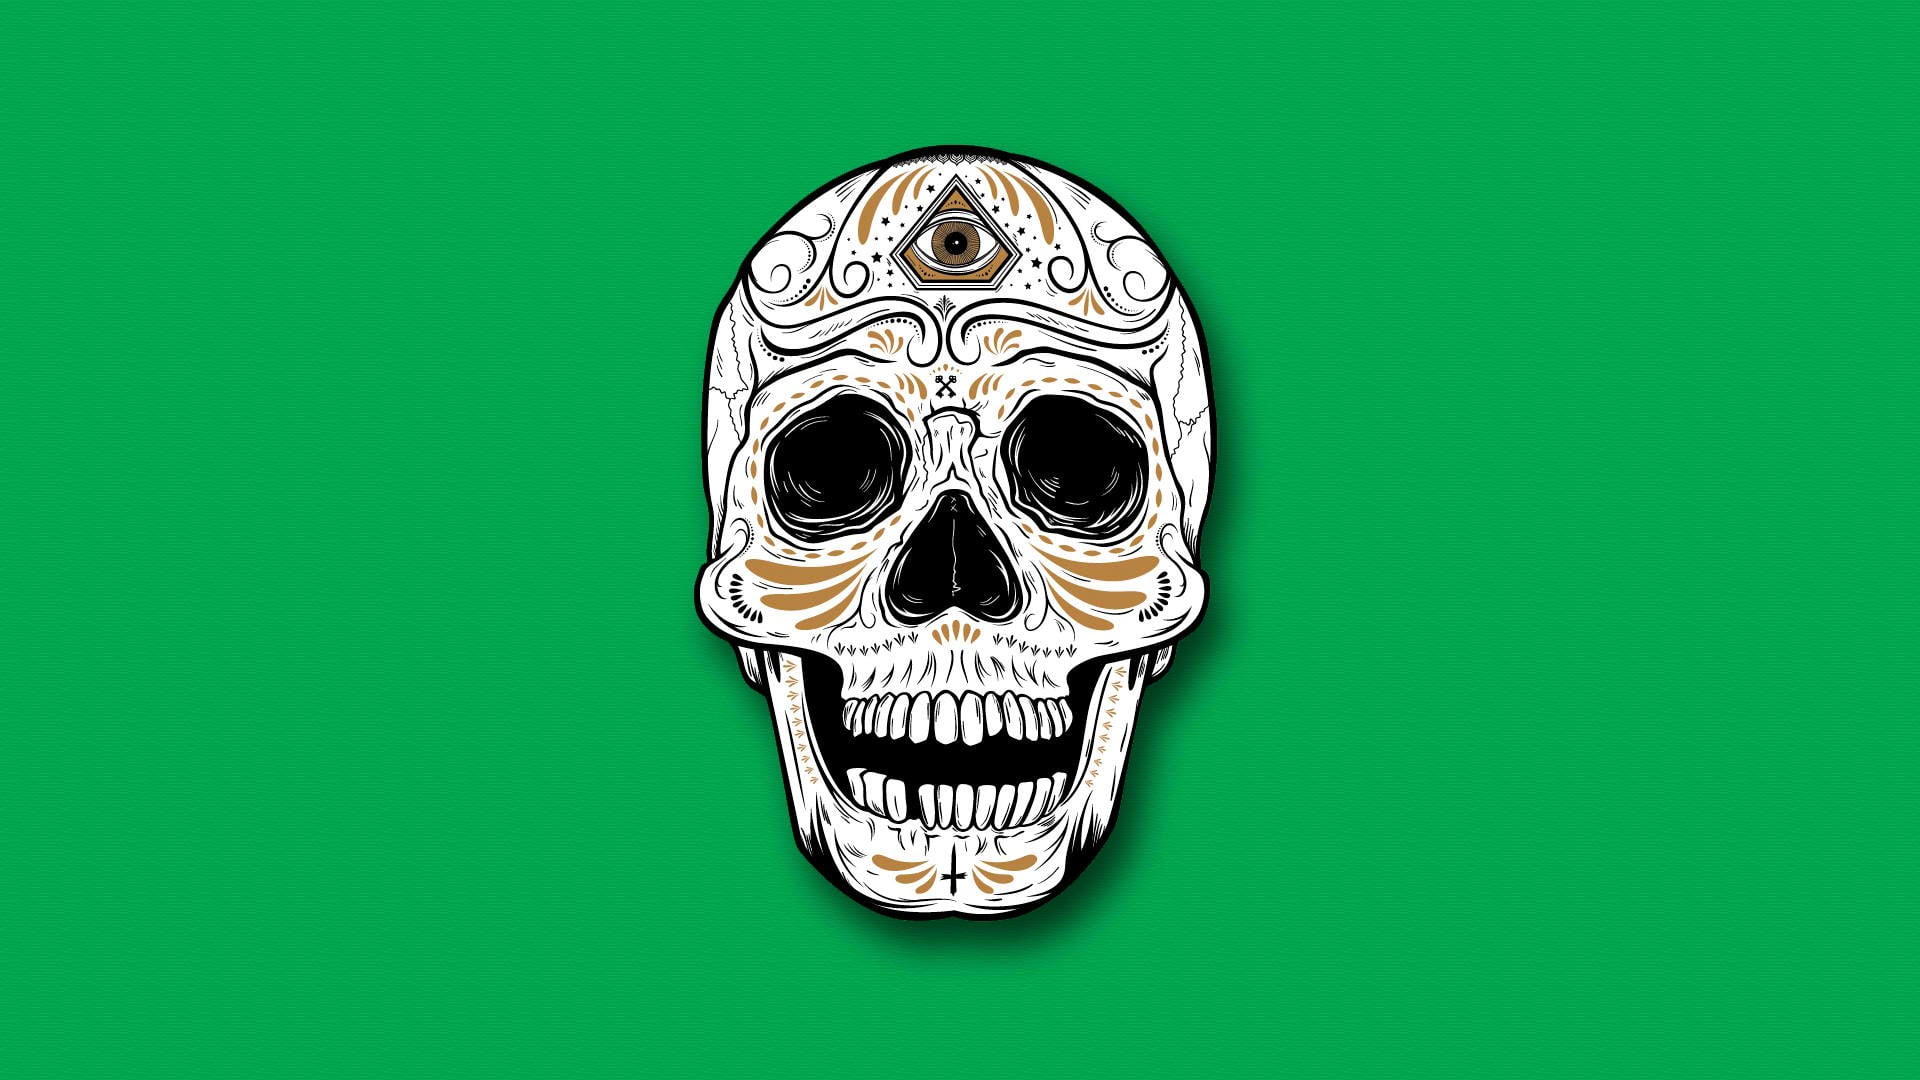 white and brown skull digital wallpaper, skull, green background, simple ba...